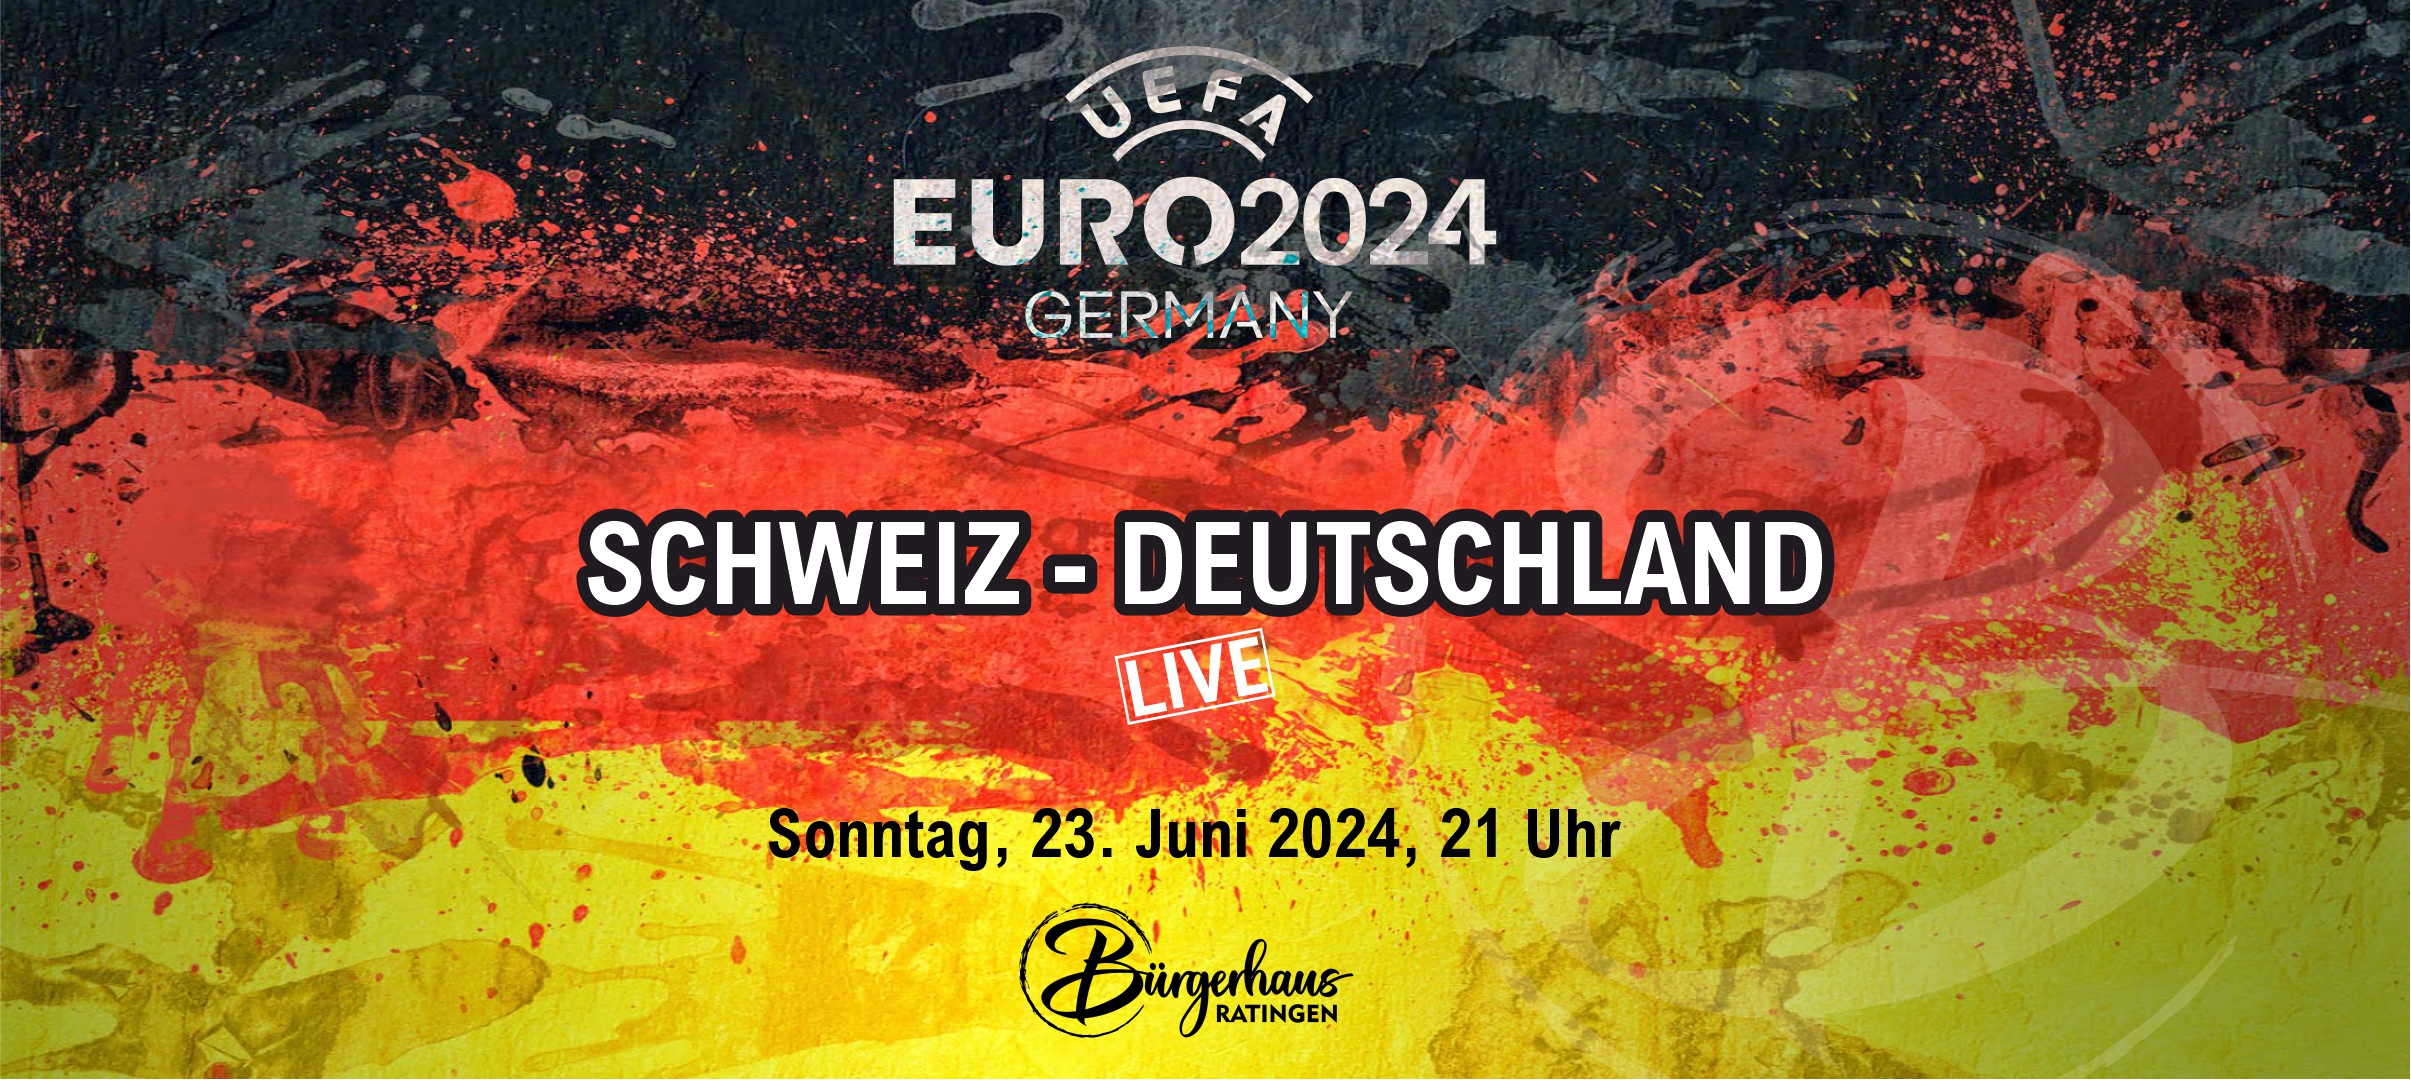 Euro 2024: SCHWEIZ - DEUTSCHLAND